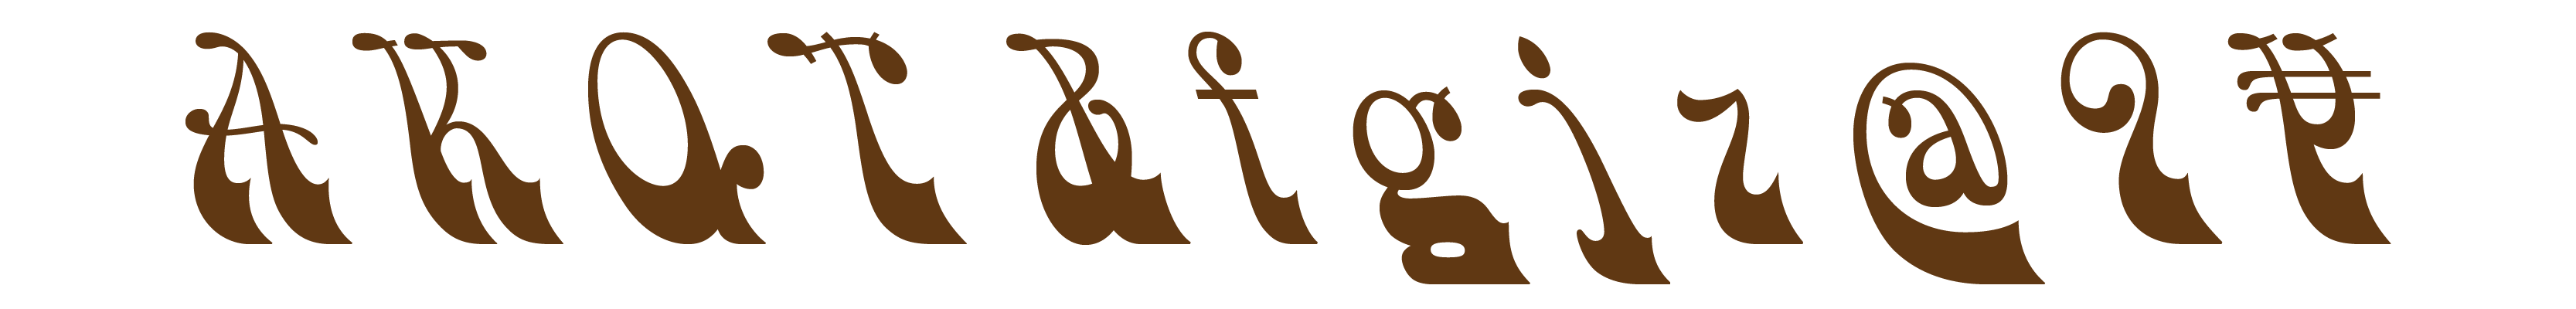 Paul’s favorite glyphs in HWT Bulletin, № 2: A K Q T & f g j z @ 9 ¥